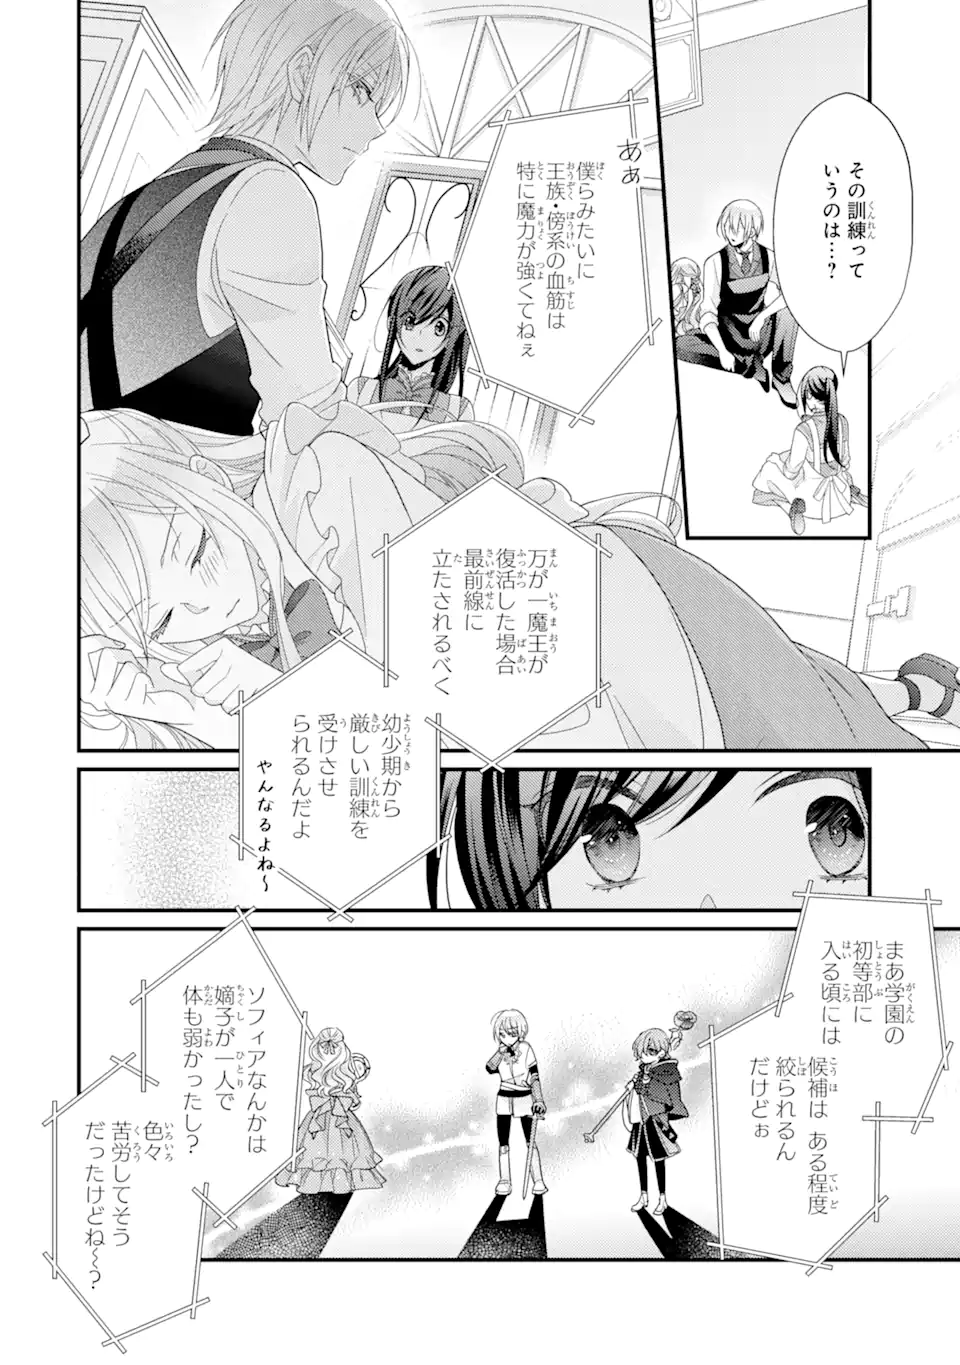 Kekkon suru Shinde Shimau no de, Kanst Seijo (Lv. 99) wa Meshi Tero Shimasu! - Chapter 7.3 - Page 7